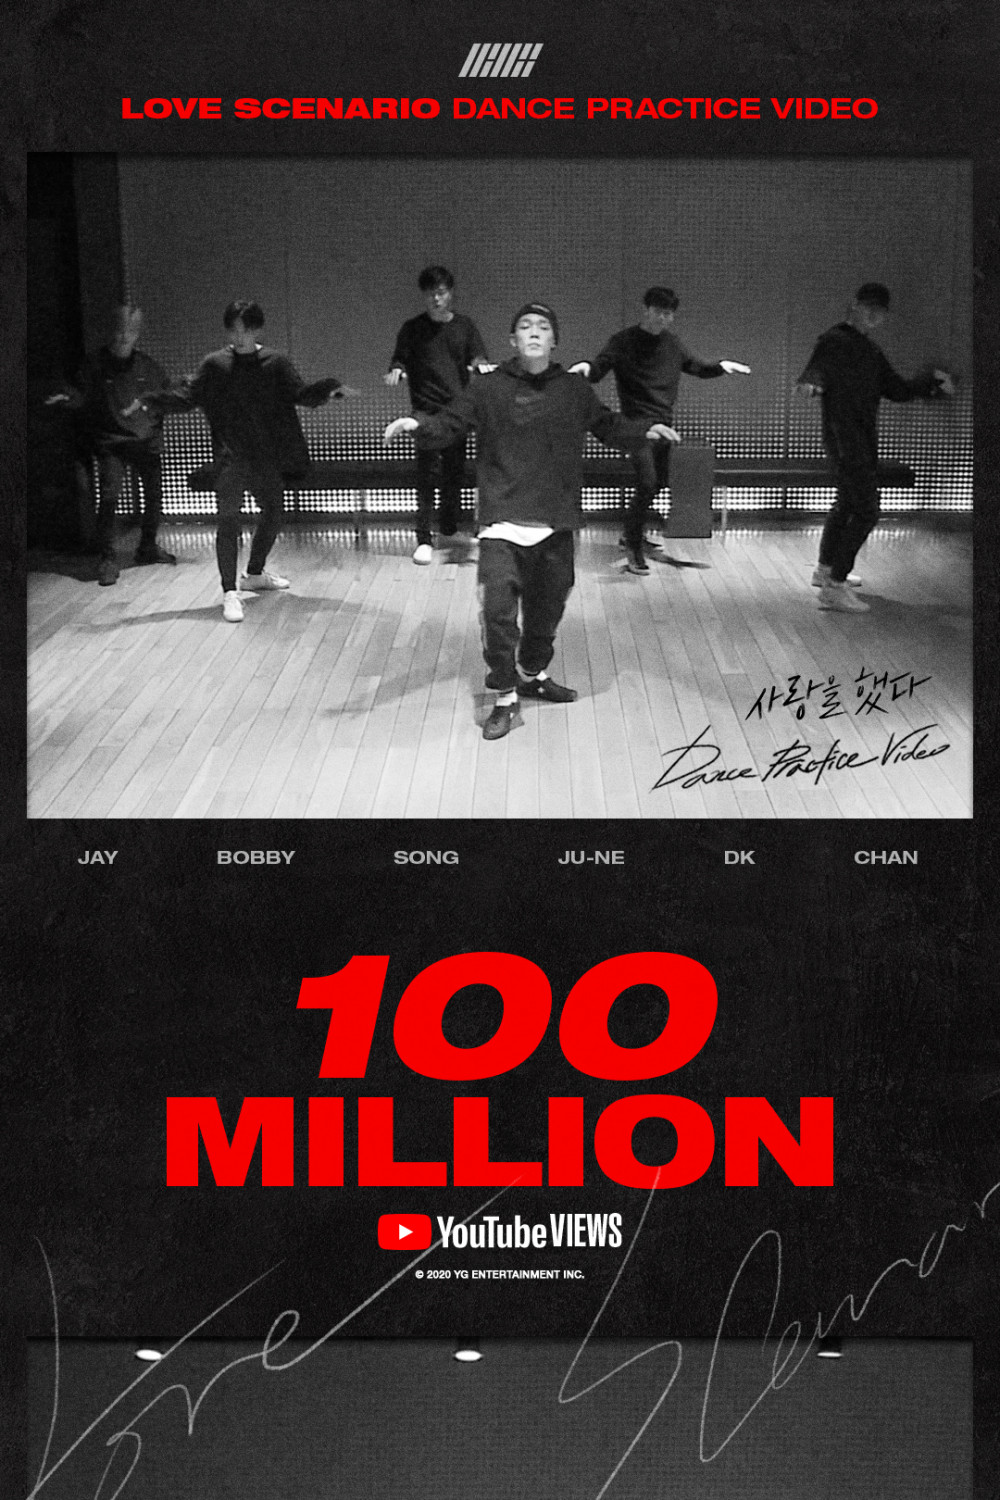 Танцевальная практика iKON "Love Scenario" набрала 100 миллионов просмотров